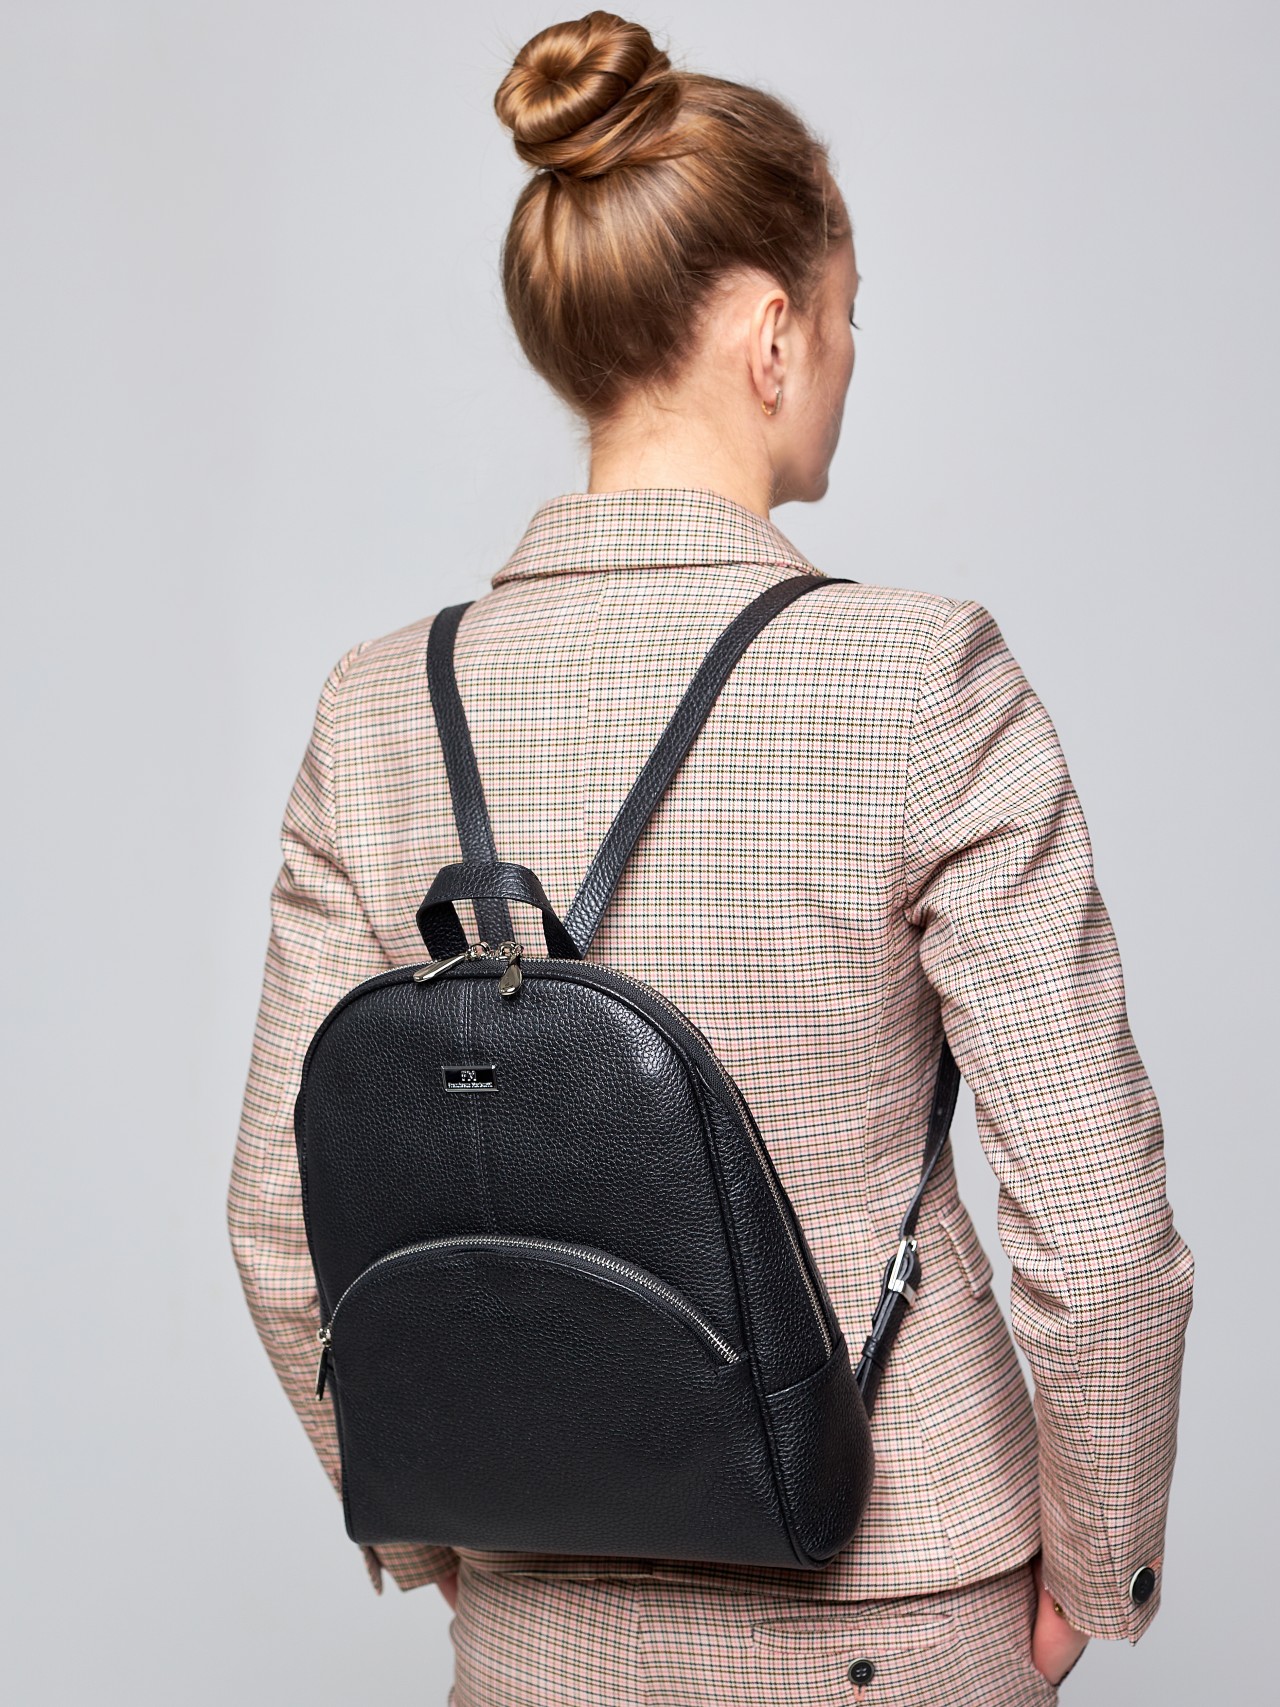 Рюкзак женский Franchesco Mariscotti 1-4270 черный фр, 32x25,5x10 см